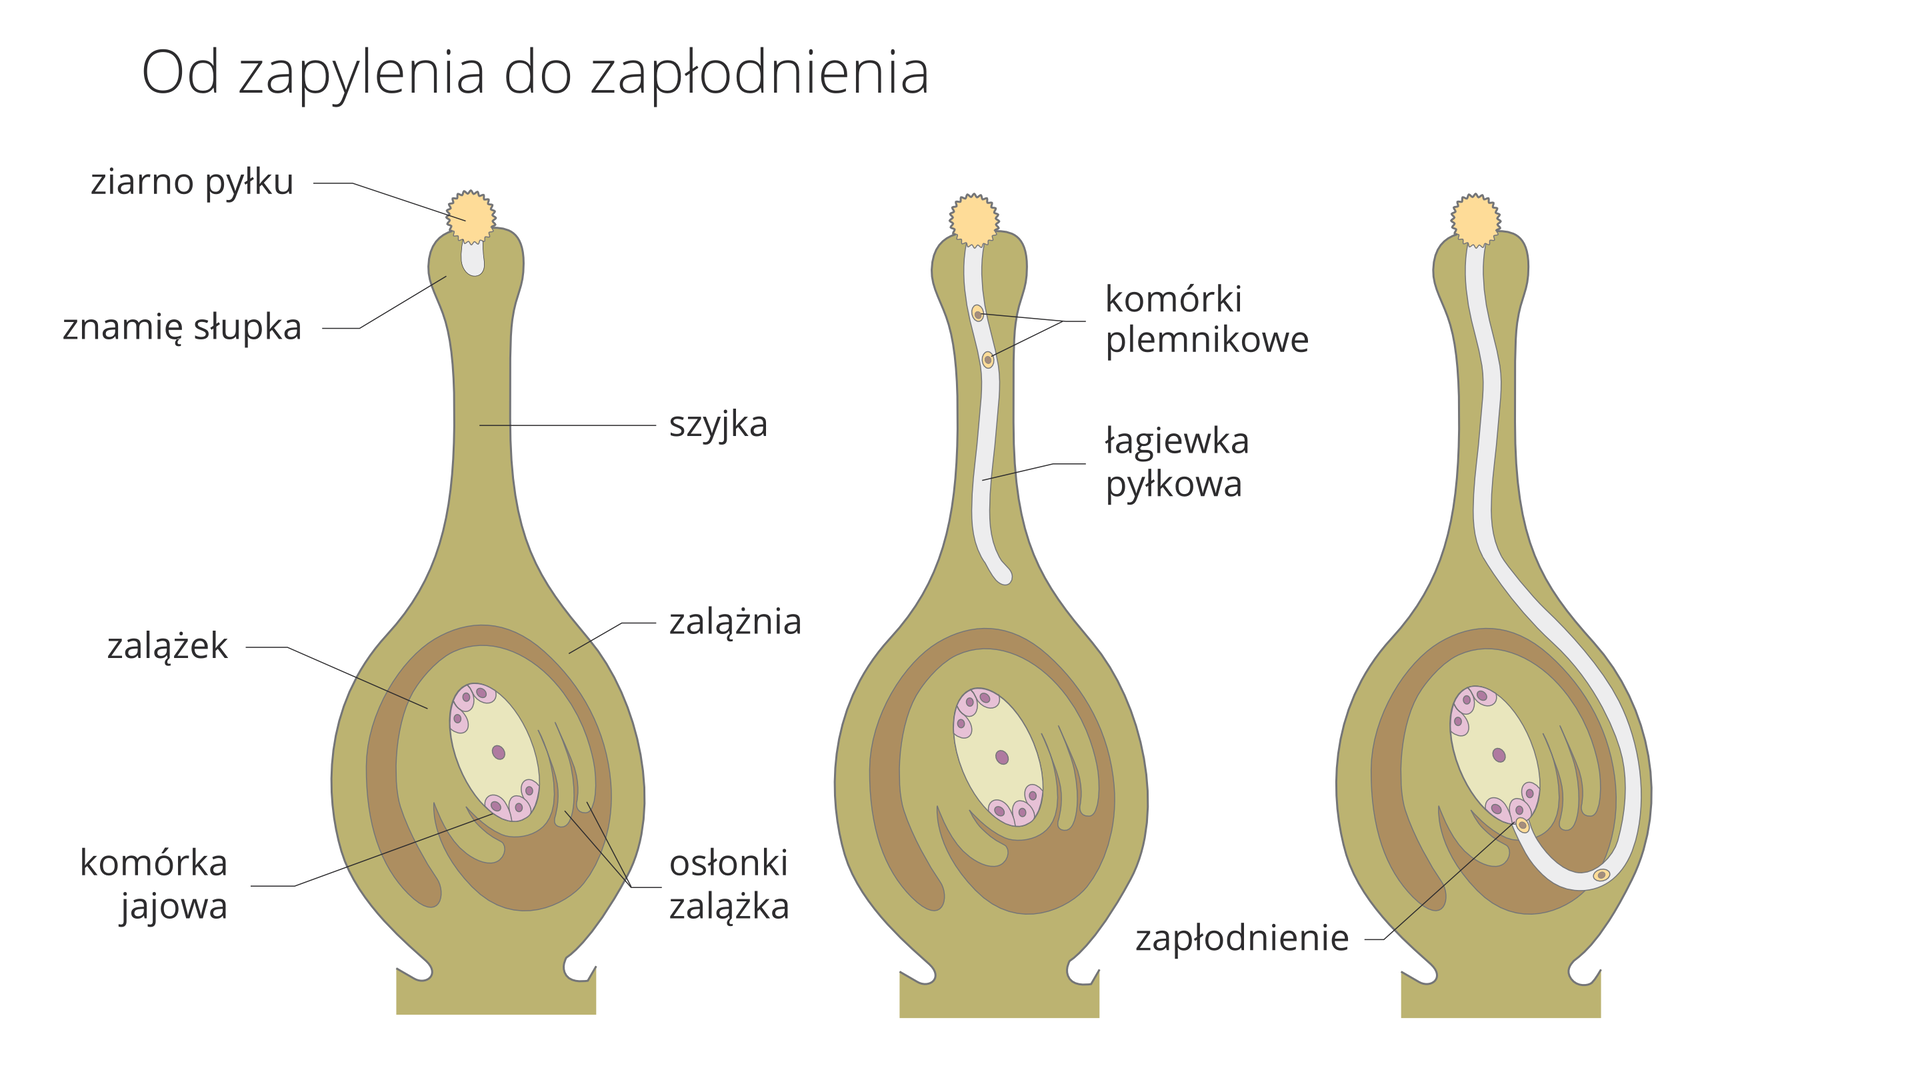 Ilustracja przedstawia trzy rysunki przekrojów przez słupek rośliny okrytonasiennej. Oznaczają one kolejne fazy od zapylenia do zapłodnienia. Słupek ma kolor jasnobrązowy. Osłonki zalążka są ciemniej brązowe. Komórkę jajową oznaczono kolorem liliowym. Na słupku pierwszym z lewej znajduje się żółte ziarno pyłku. Wyrasta z niego w głąb słupka jasna łagiewka pyłkowa. Wszystkie elementy są opisane.